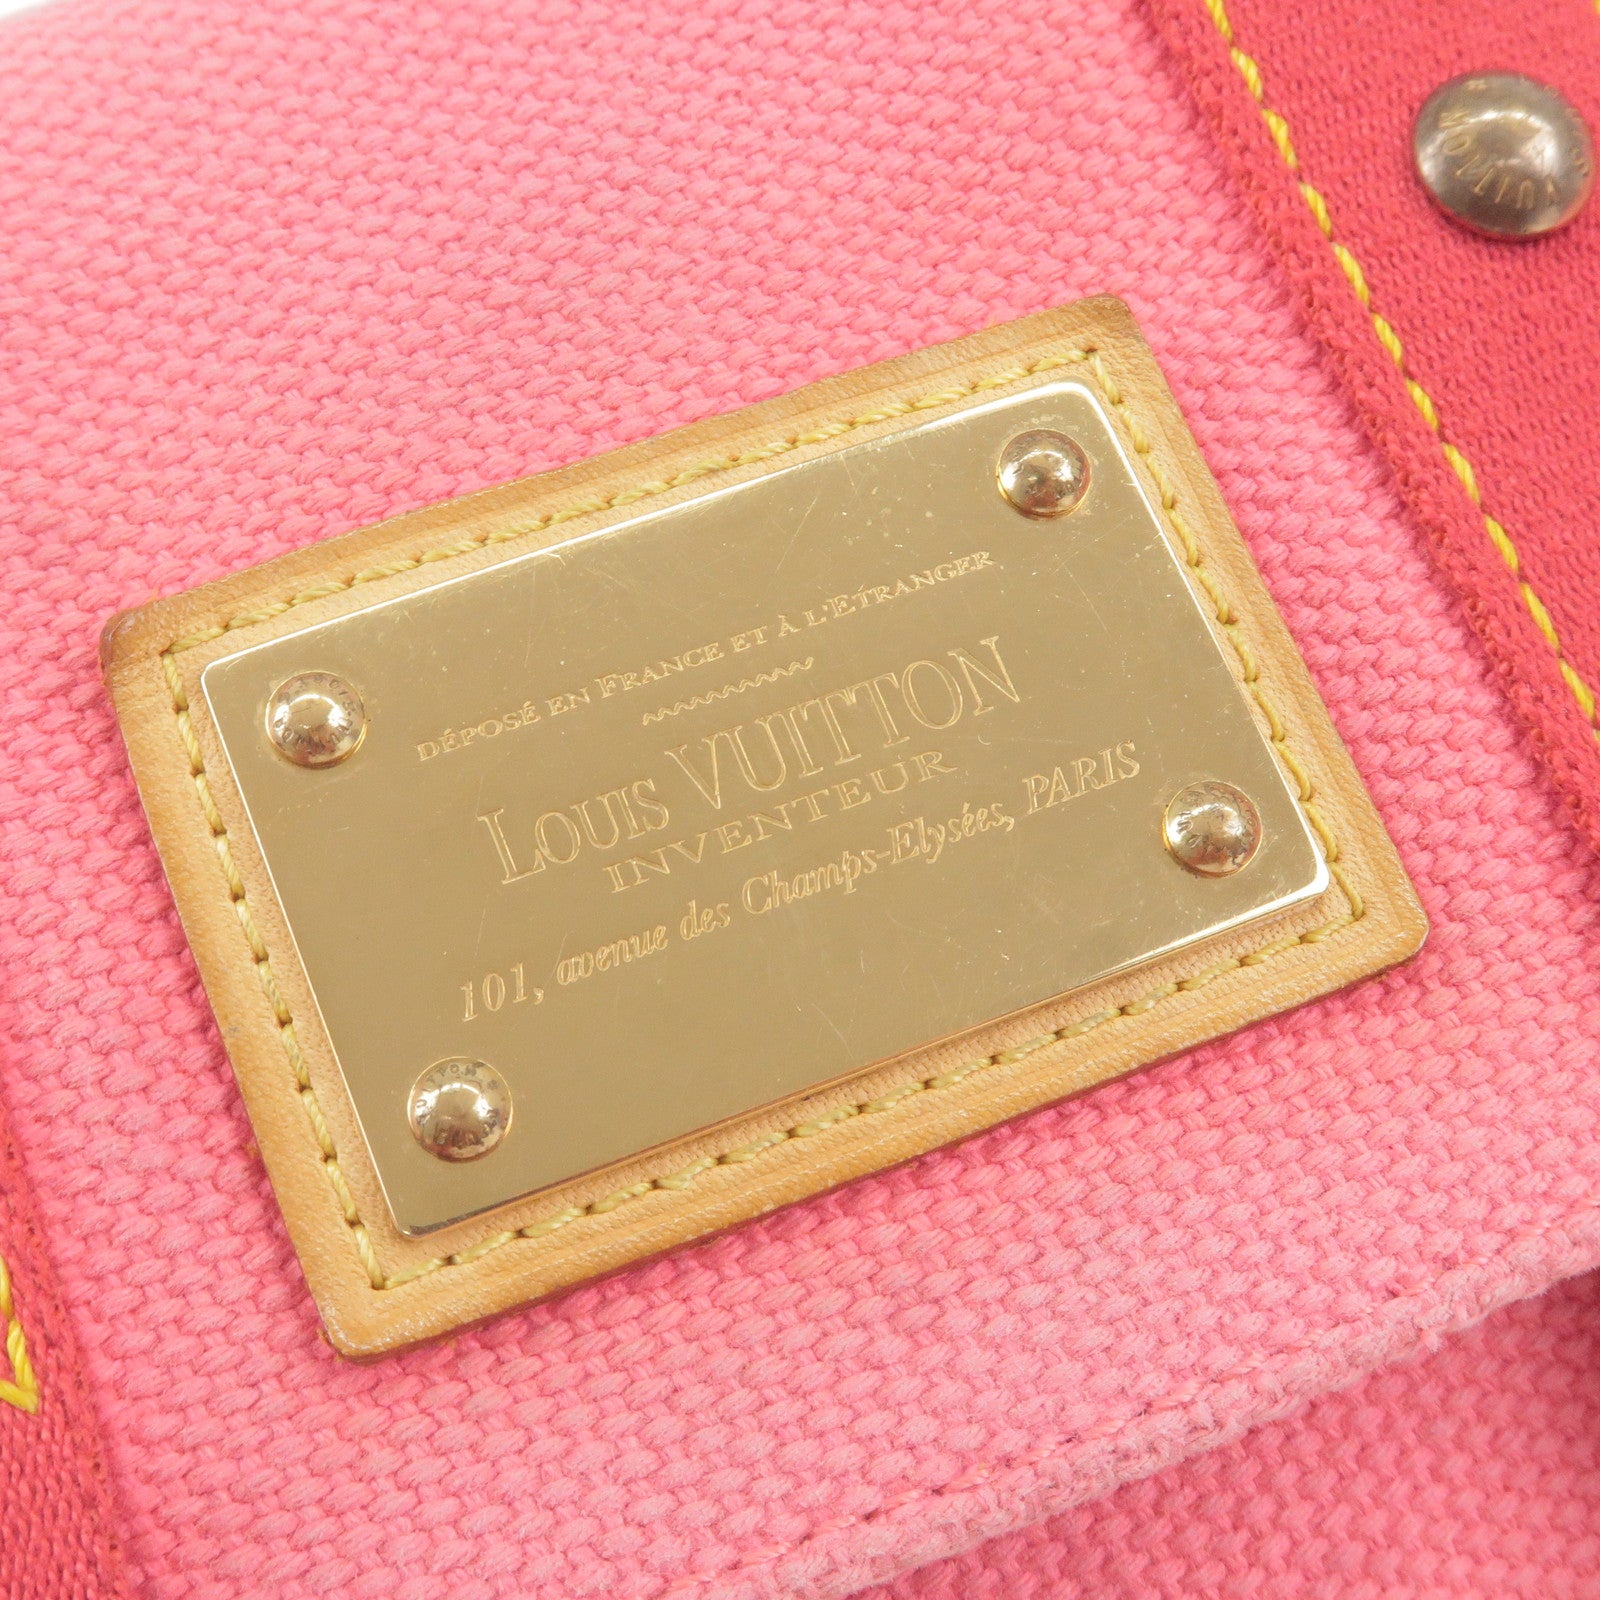 Croissant - Shoulder - Monogram - ep_vintage luxury Store - Louis Vuitton  Antigua Sac Rabat Shoulder Bag Rose M40071 - Hand - Louis - Bag - MM - Bag  - M51512 – dct - Vuitton